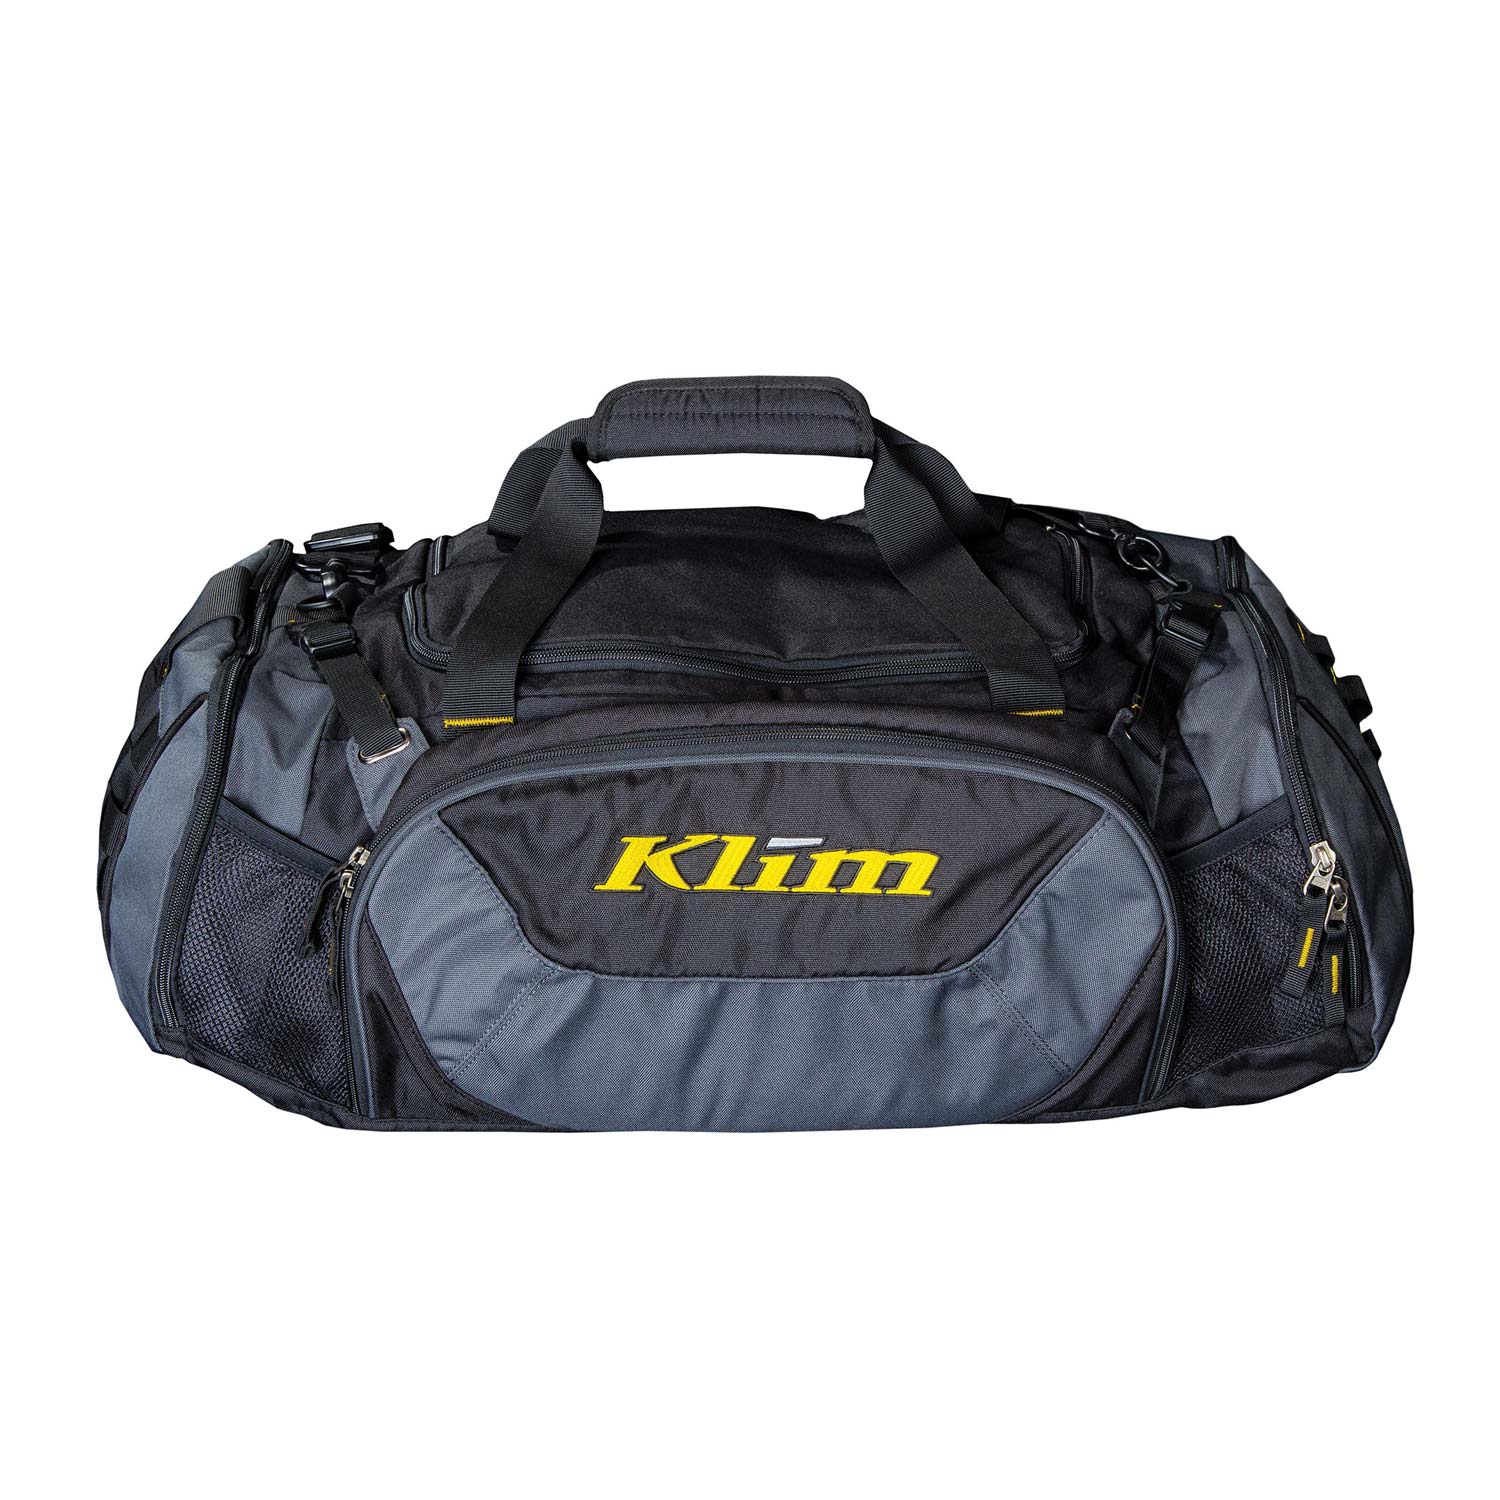 Arsenal 30 Backpack by Klim - Slavens Racing